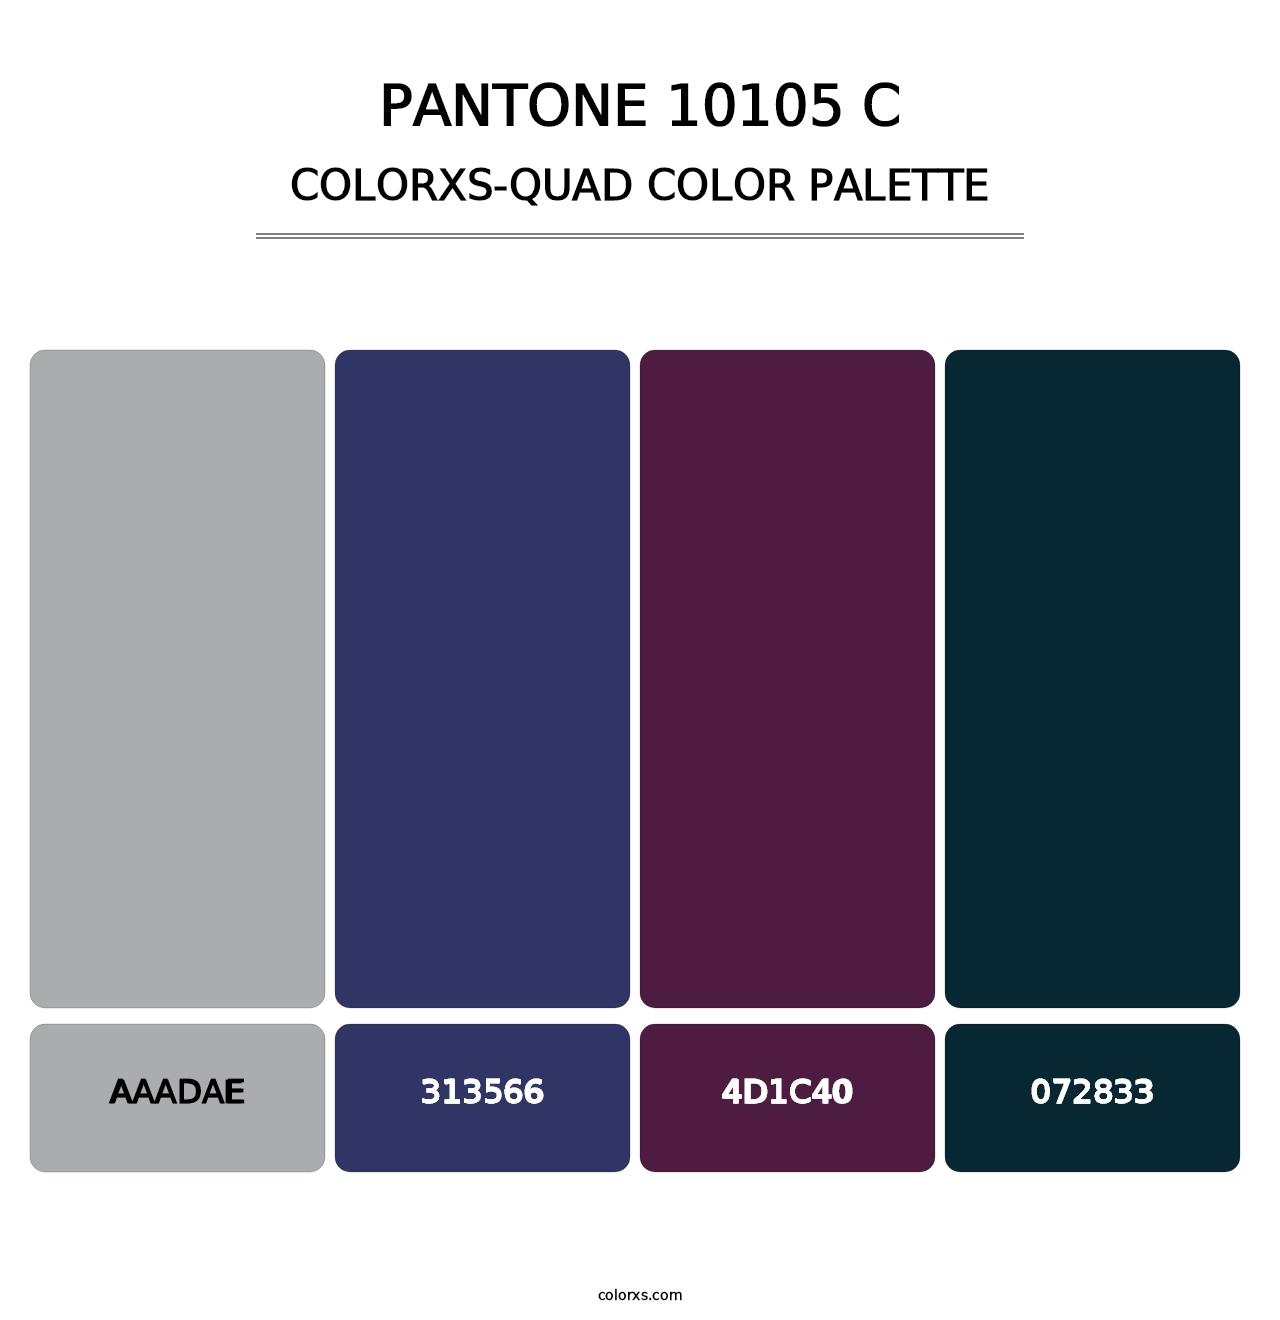 PANTONE 10105 C - Colorxs Quad Palette